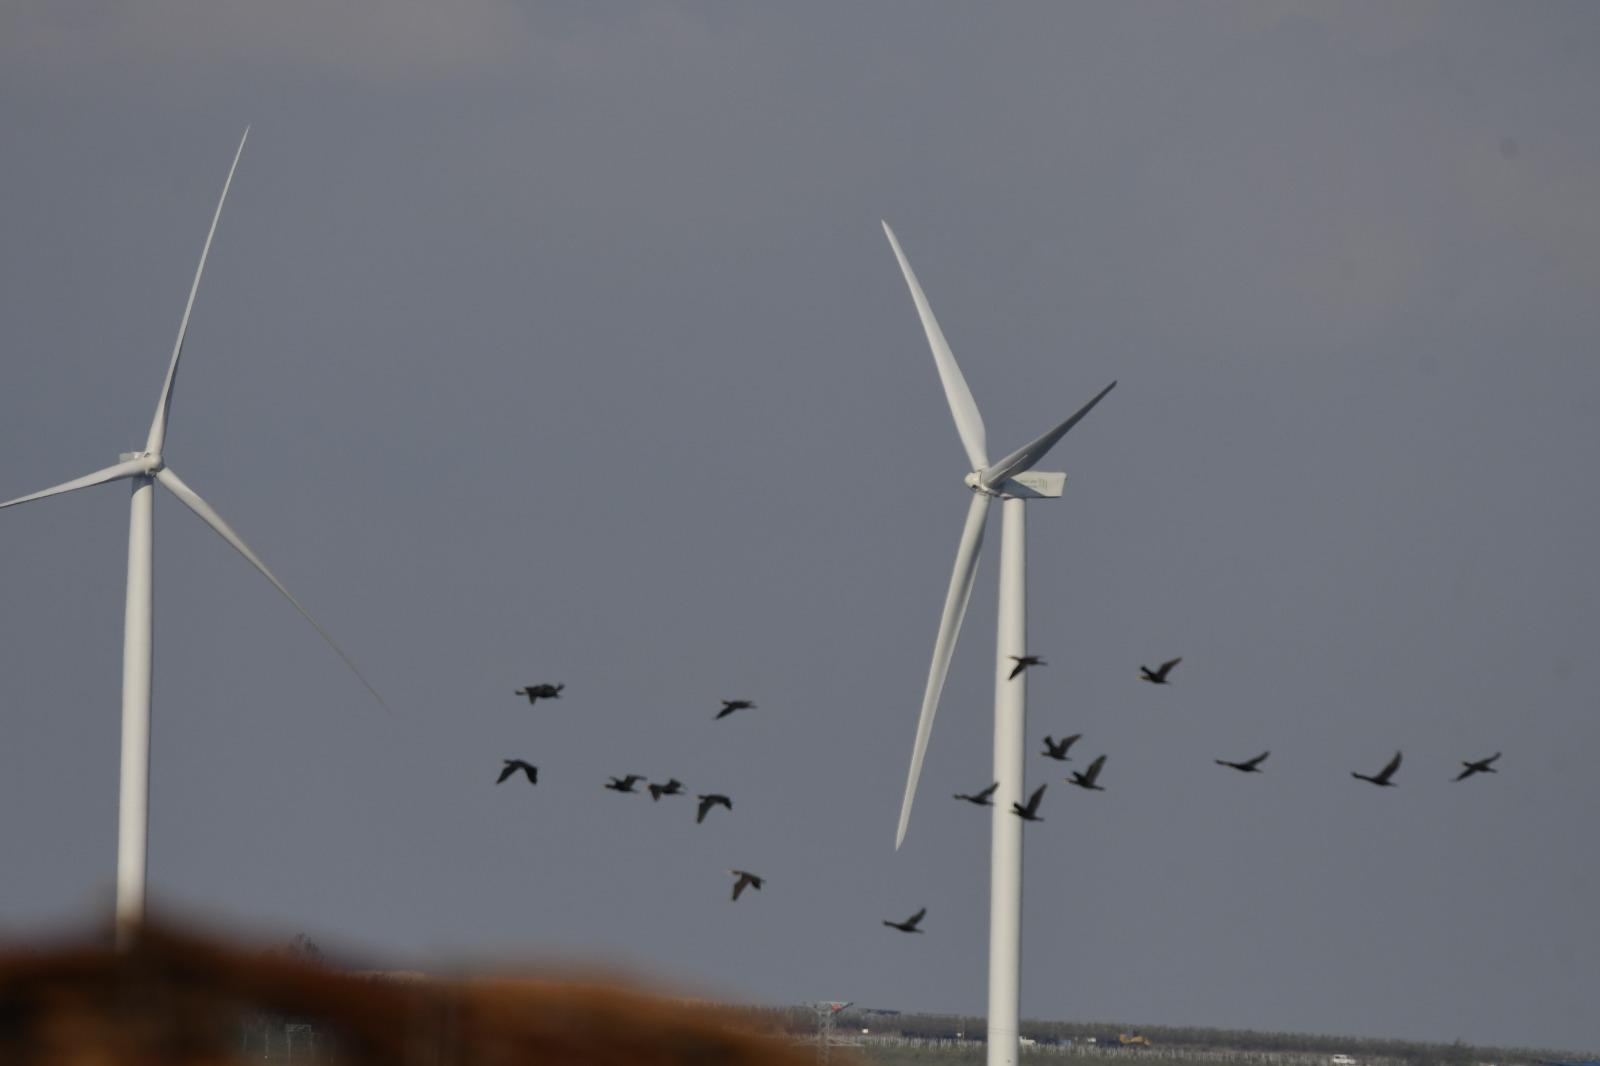 עופות דורסים ליד טורבינות רוח ברמת הגולן (צילום: לירון שפירא / החברה להגנת הטבע)